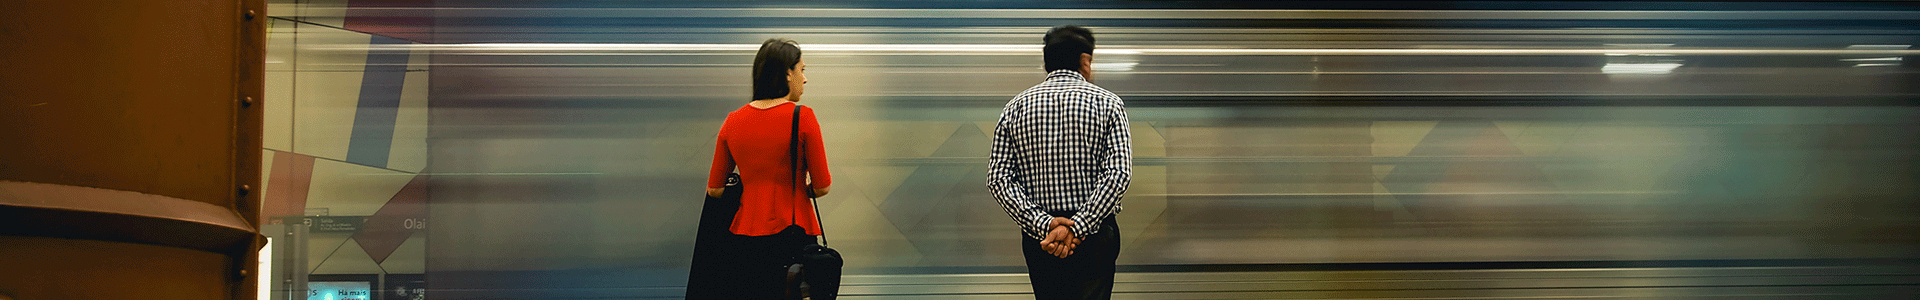 Dois clientes no cais de uma estação de metro observam um comboio a passar.